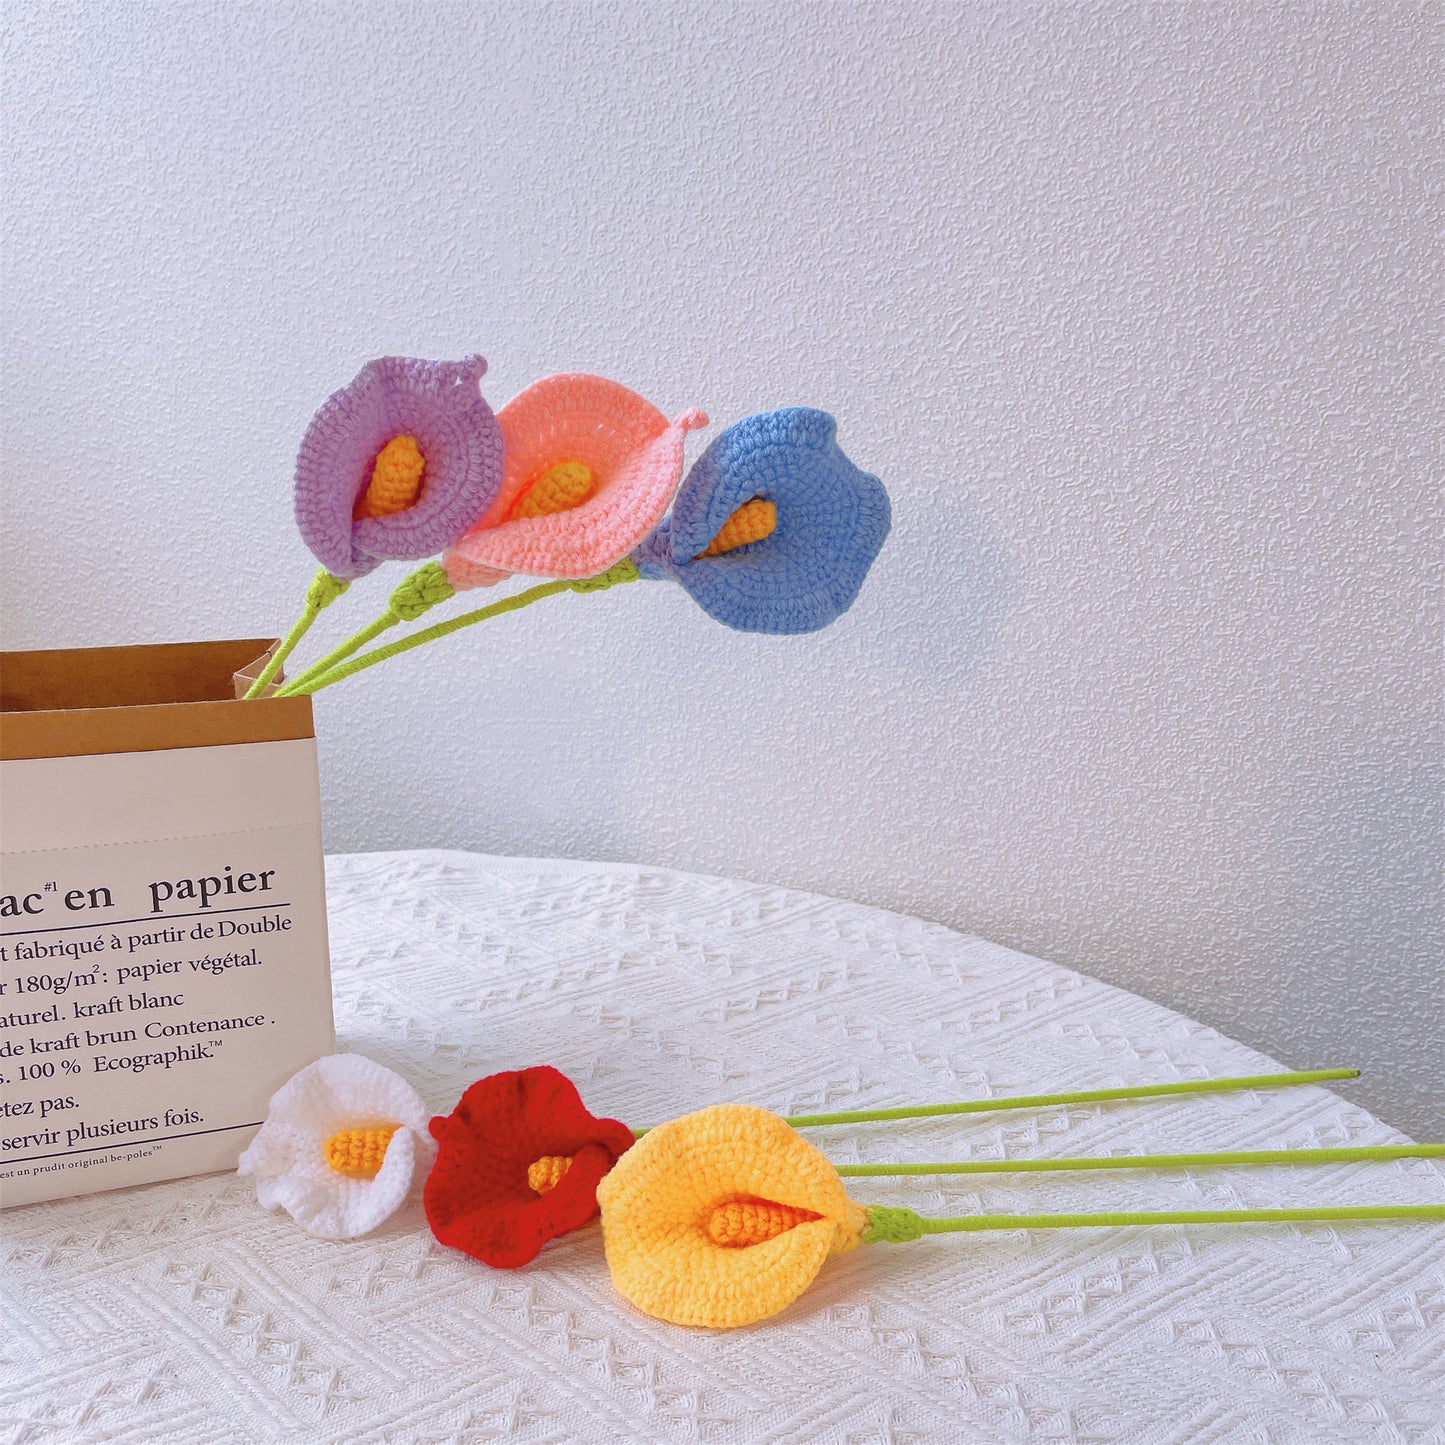 Calla Lily Grace : Piquet de Calla Lily au crochet fabriqué à la main pour un décor de jardin gracieux